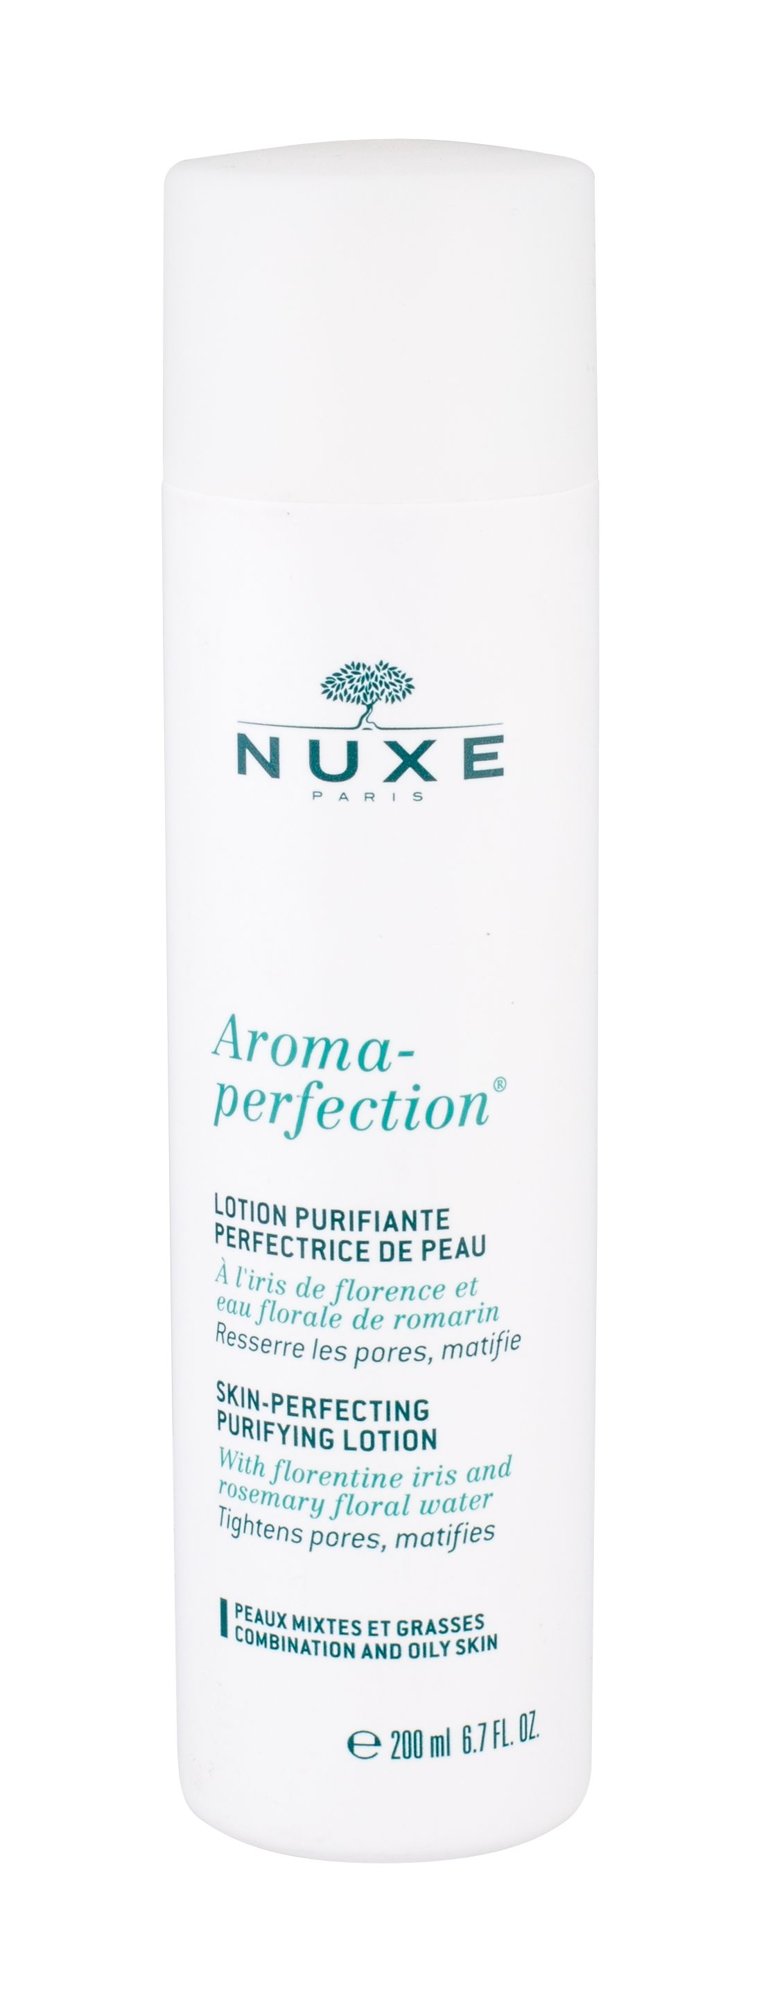 Nuxe Aroma-Perfection 200ml valomasis vanduo veidui Testeris